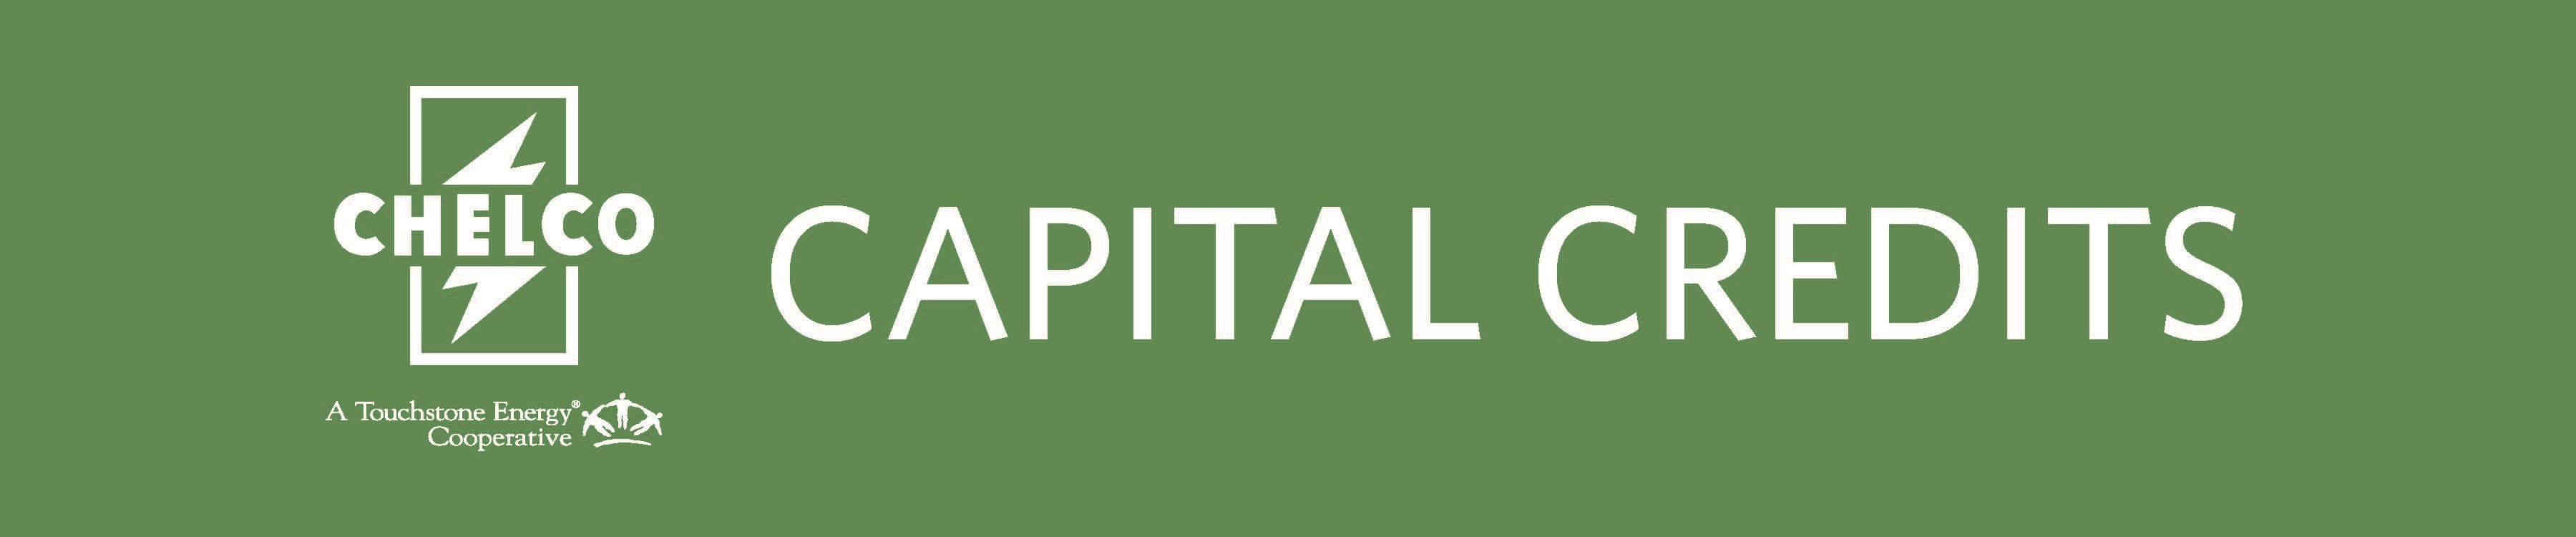 Capital Credit